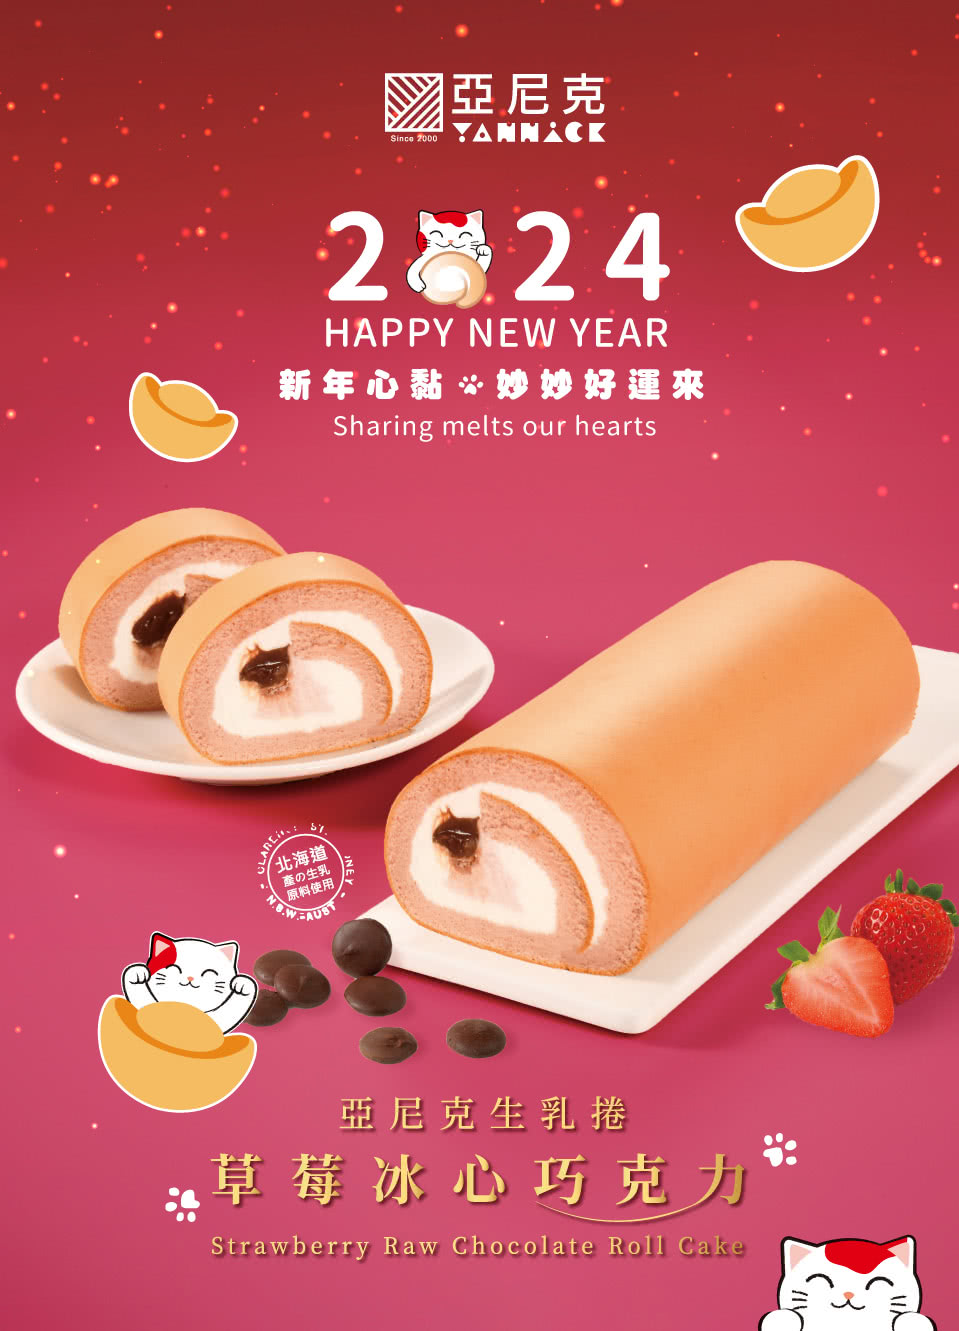 亞尼克果子工房 12CM草莓冰心巧克力獨享生乳捲蛋糕(新年限